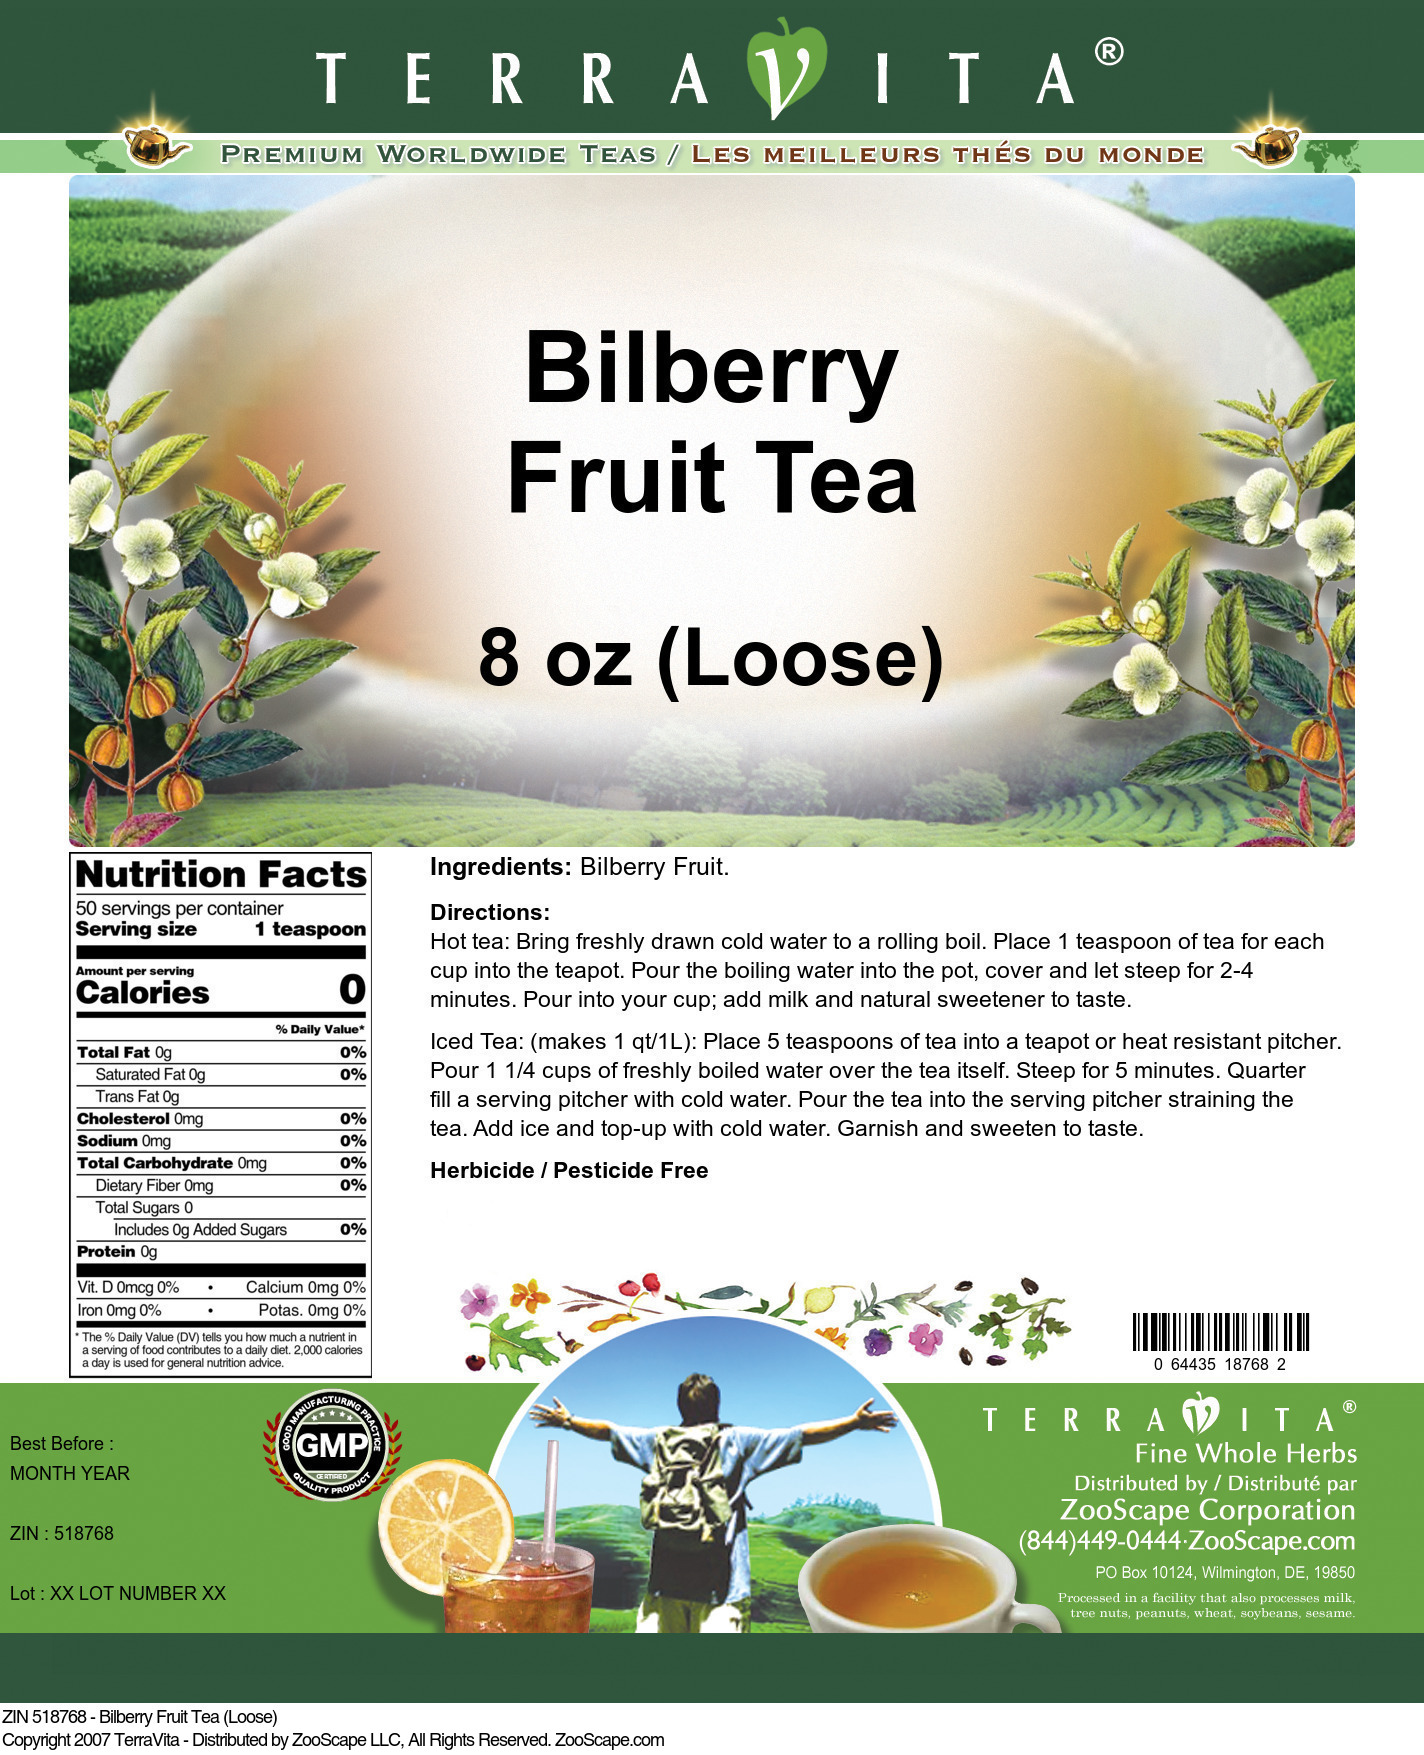 Bilberry Fruit Tea (Loose) - Label